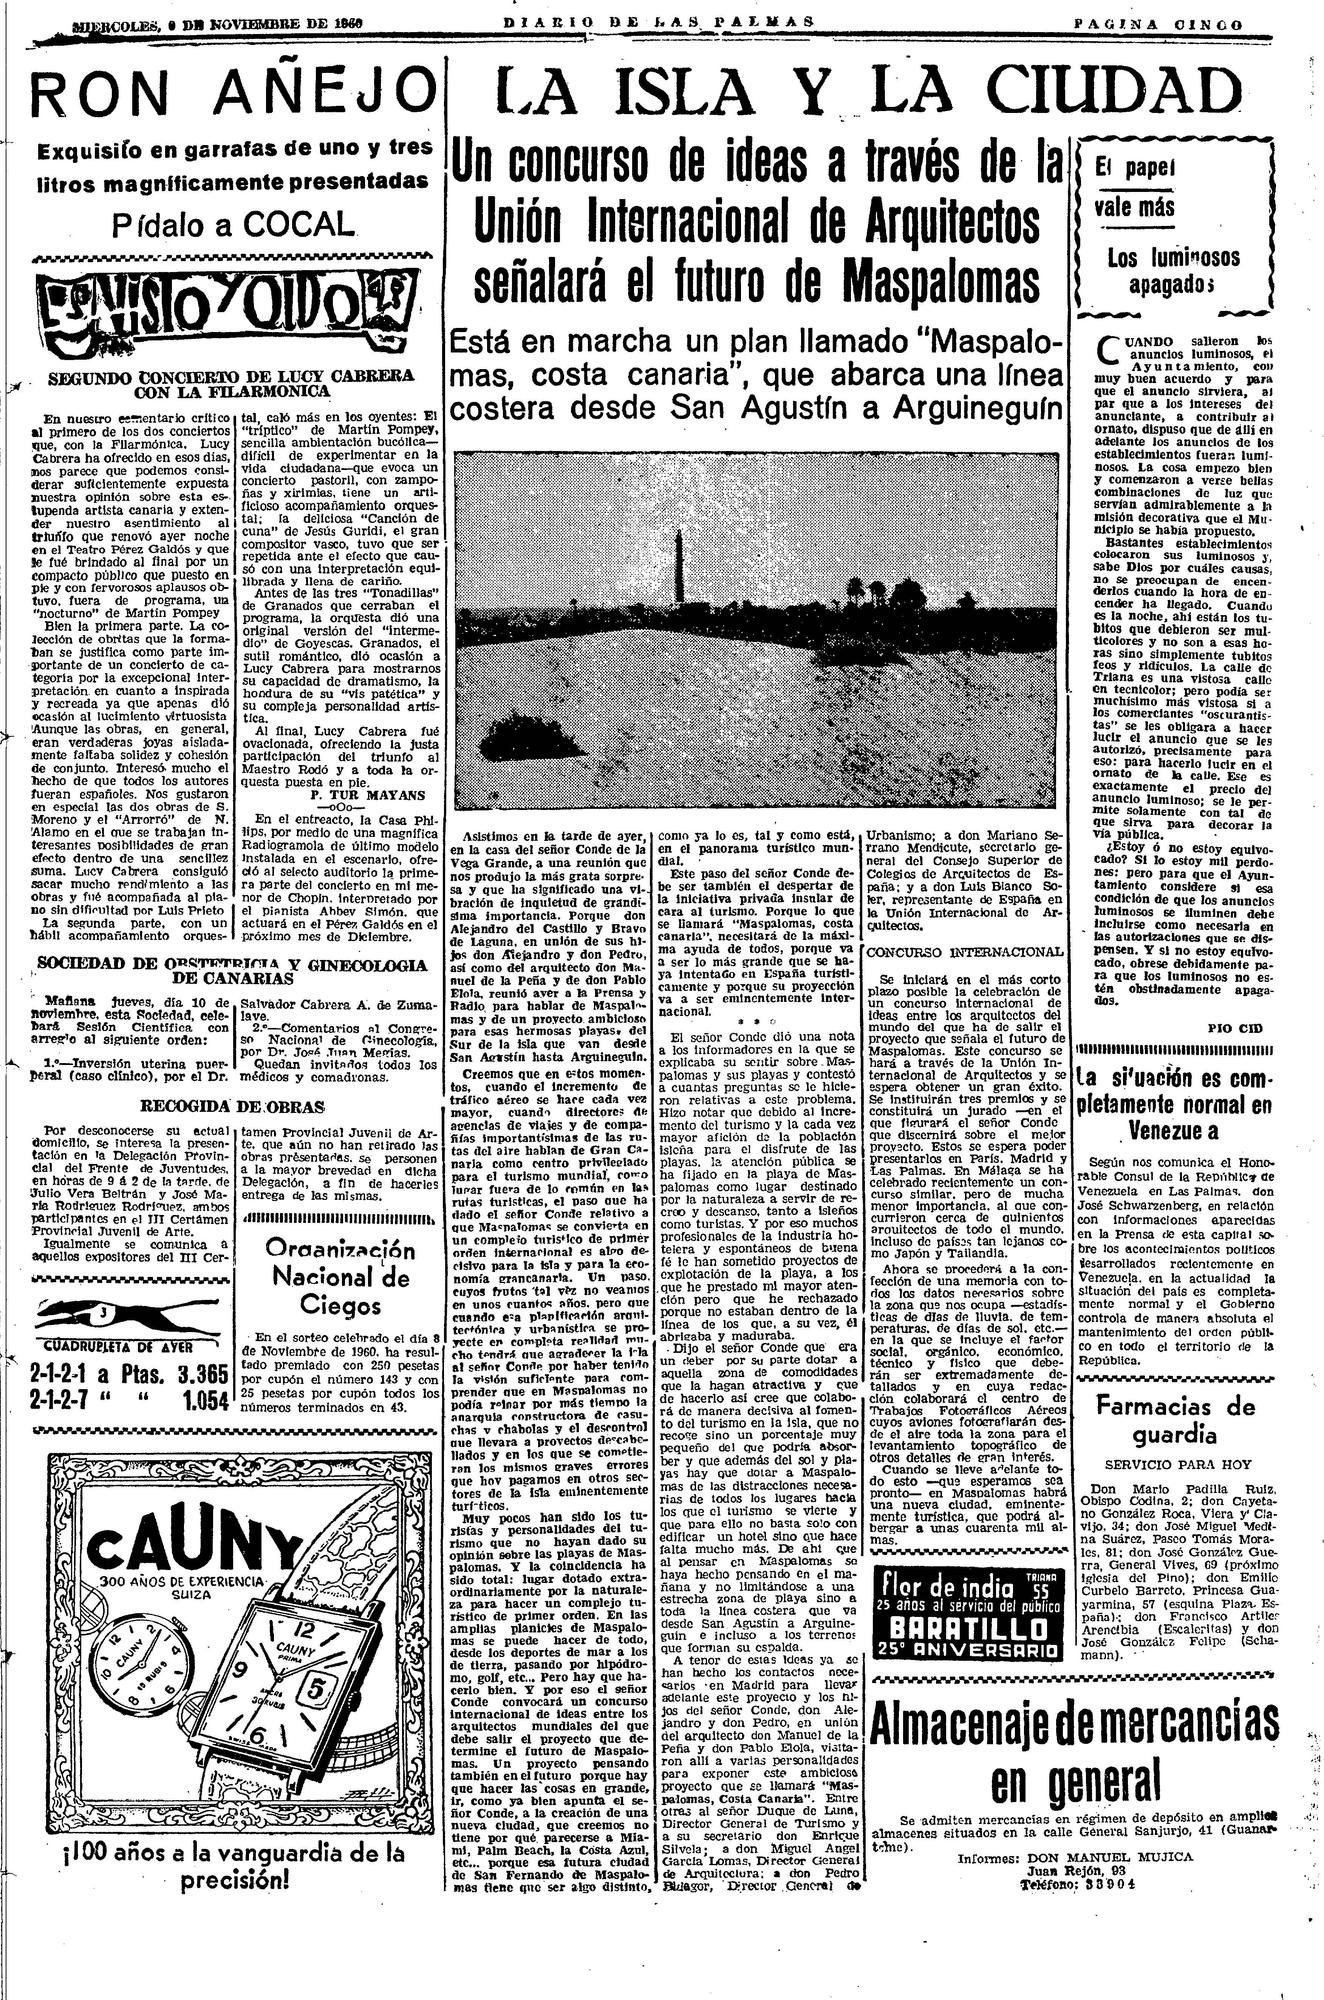 Página del Diario de Las Palmas del 9 de noviembre de 1960 en la que se informaba de la idea del conde de convocar el concurso de ideas.